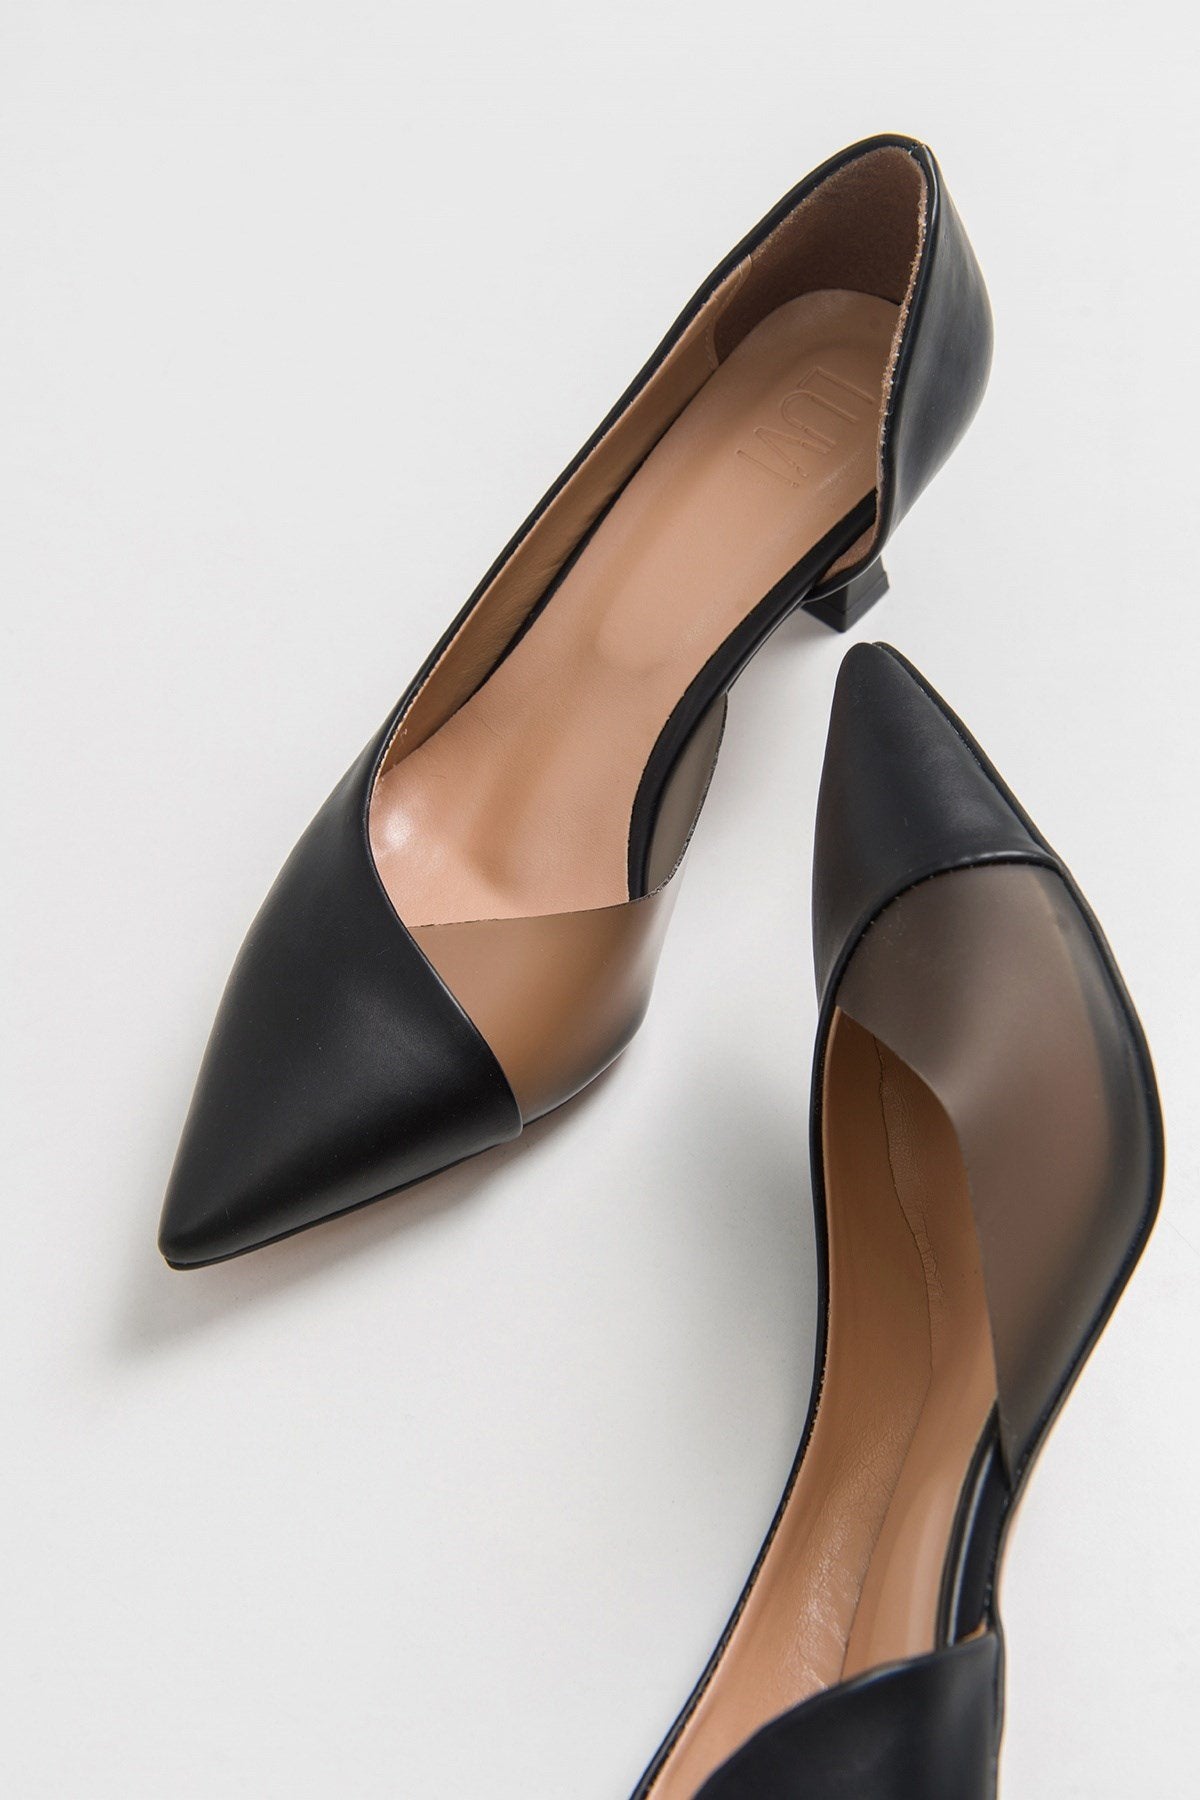 353 Black Skin Heeled Women's Shoes - Lebbse